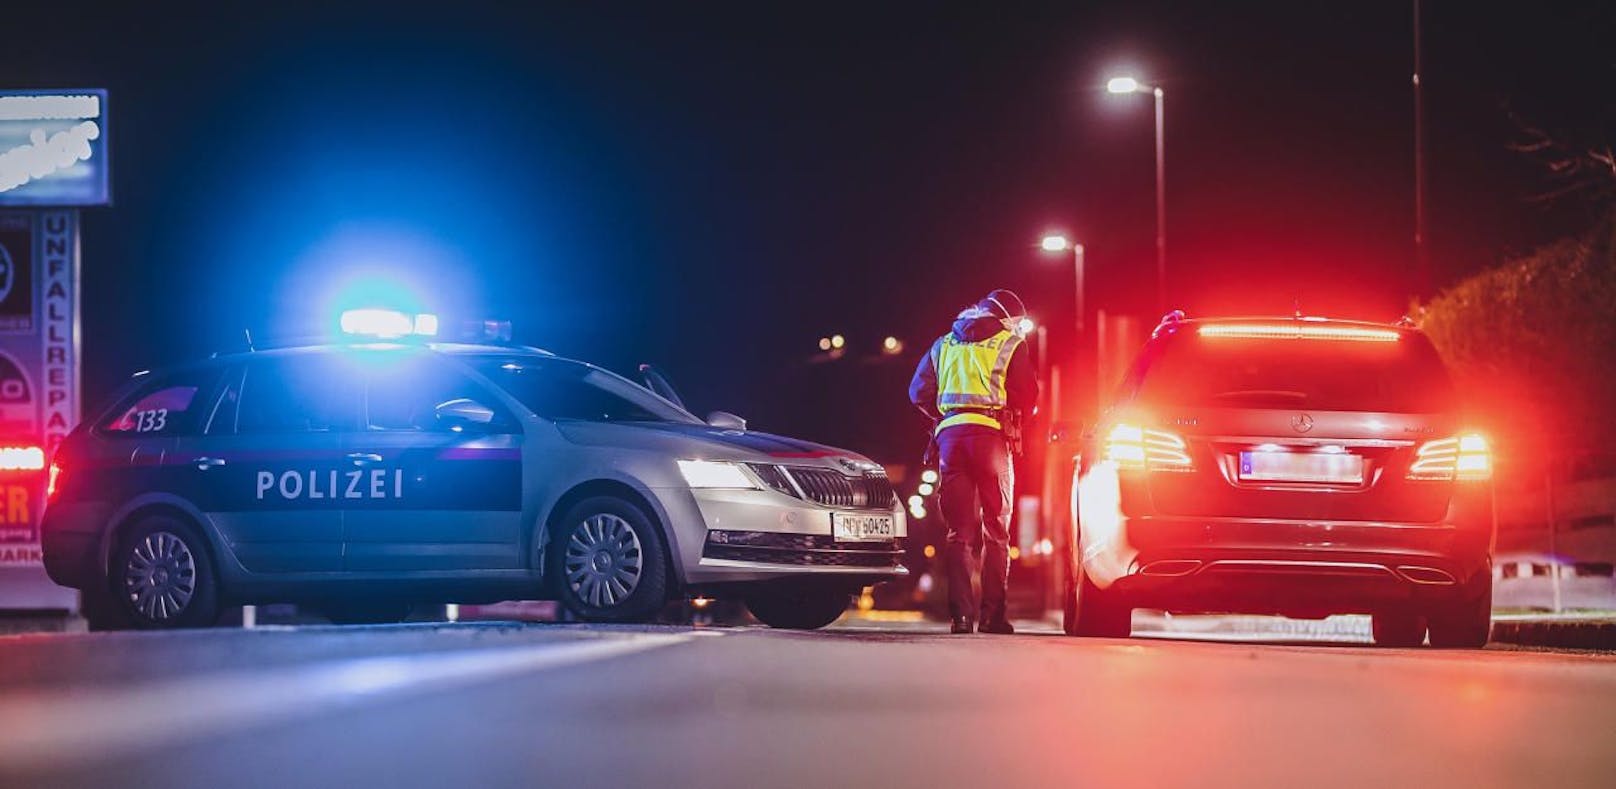 Führerschein-Neuling (19) raste vor Polizei davon